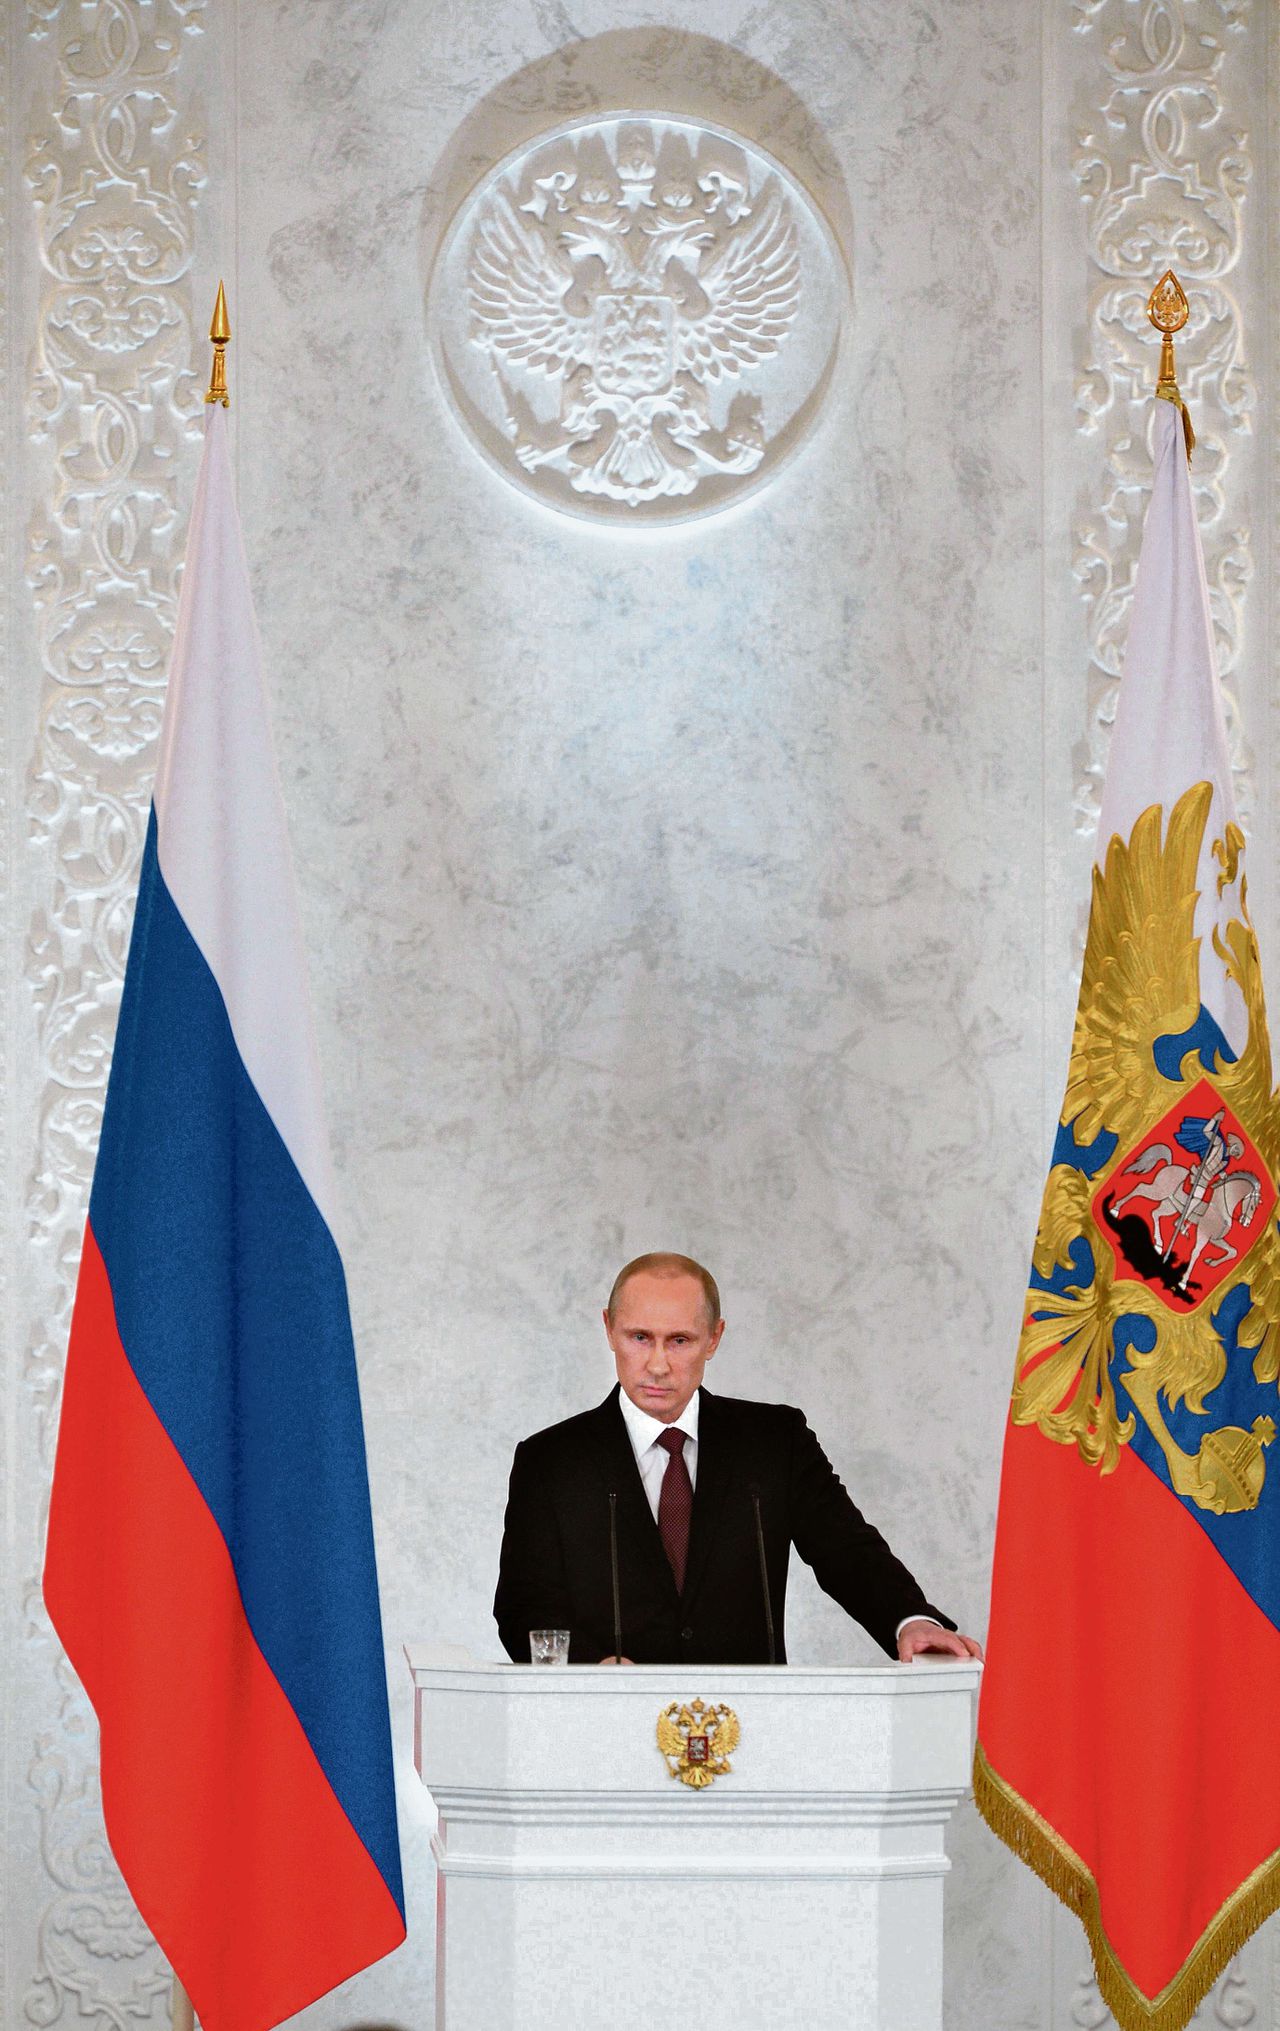 President Vladimir Poetin gisteren tijdens zijn toespraak in het Kremlin tot parlementariërs en andere hoge gasten over de Krim.